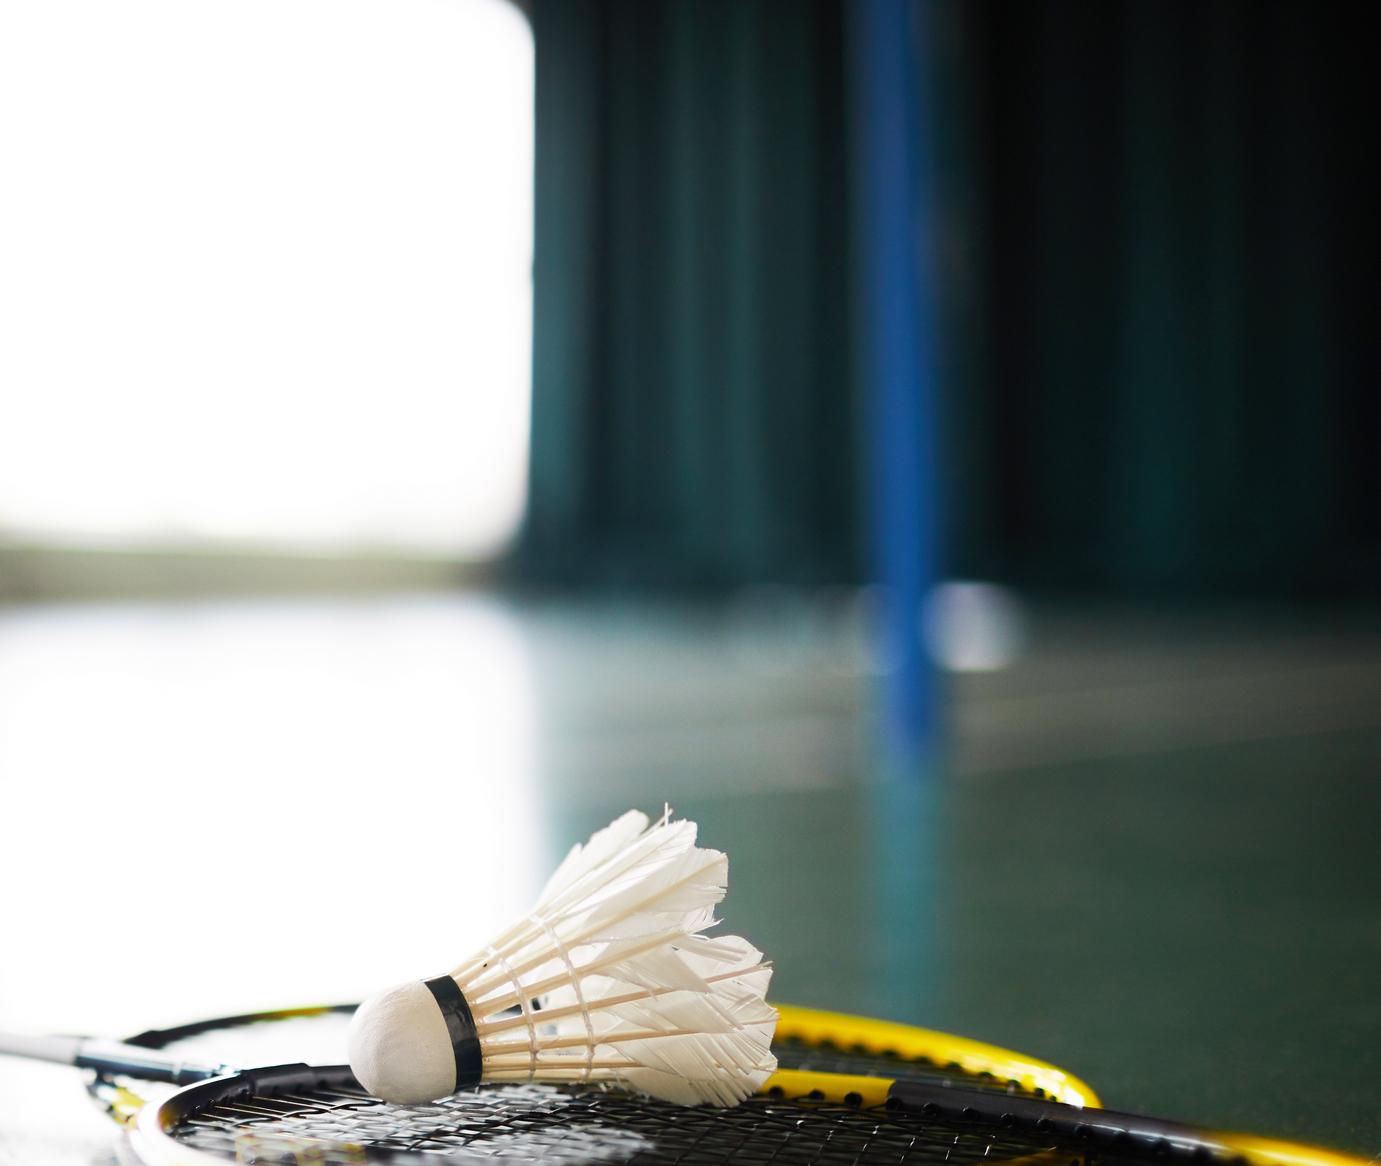 Zestaw trzech lotek piórkowych - najlepsze rozwiązanie dla doskonalenia swojej techniki gry w badmintona!